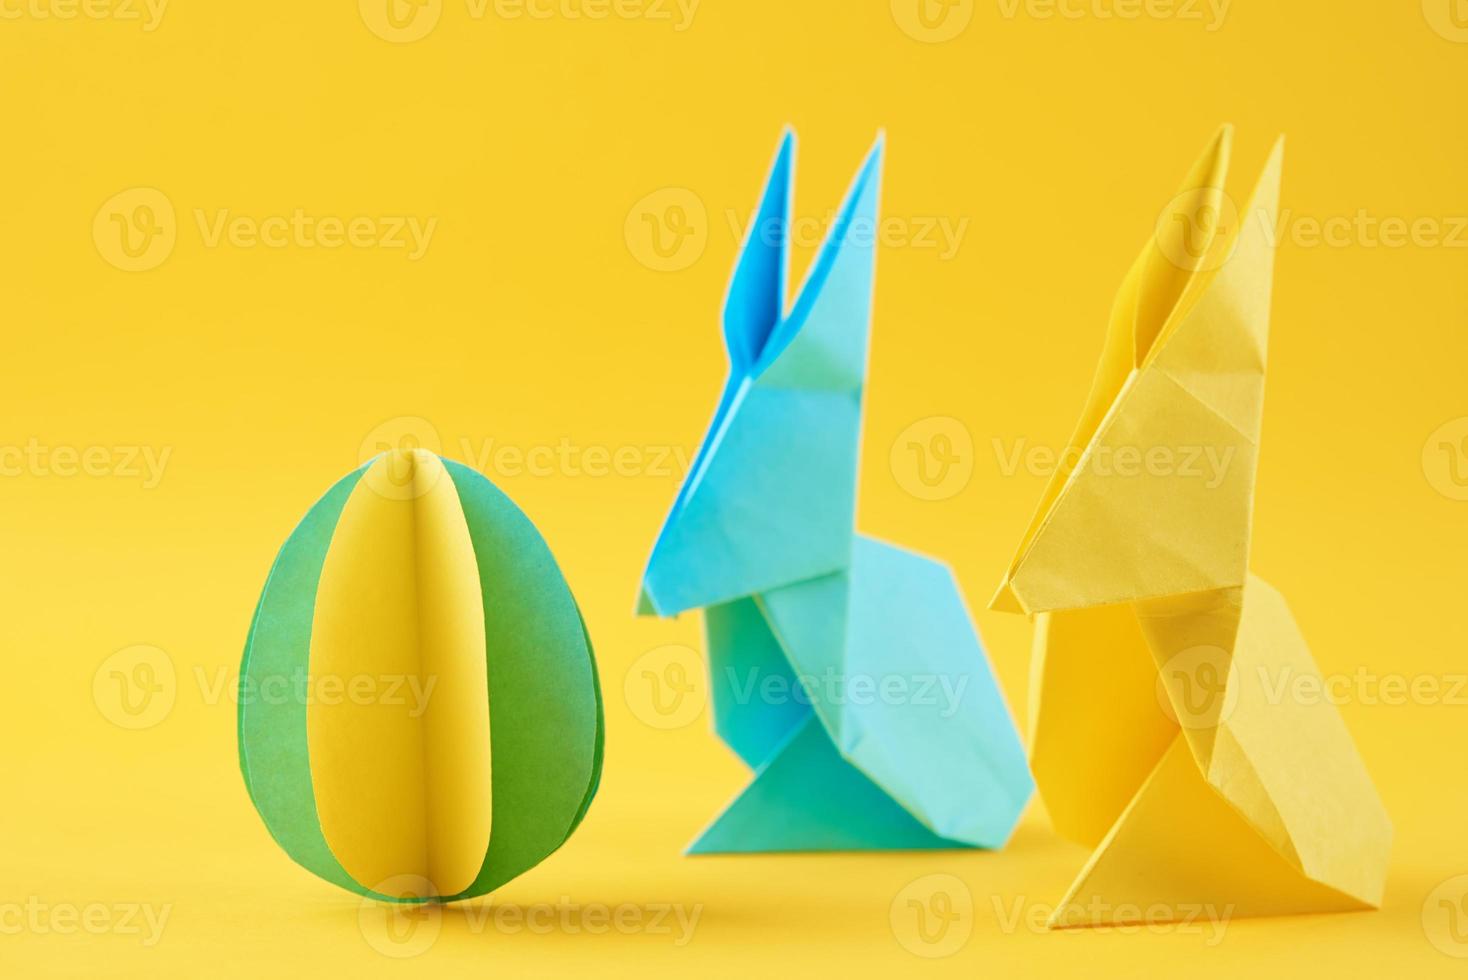 två papper origami esater kaniner och färgad ägg på gul bakgrund foto